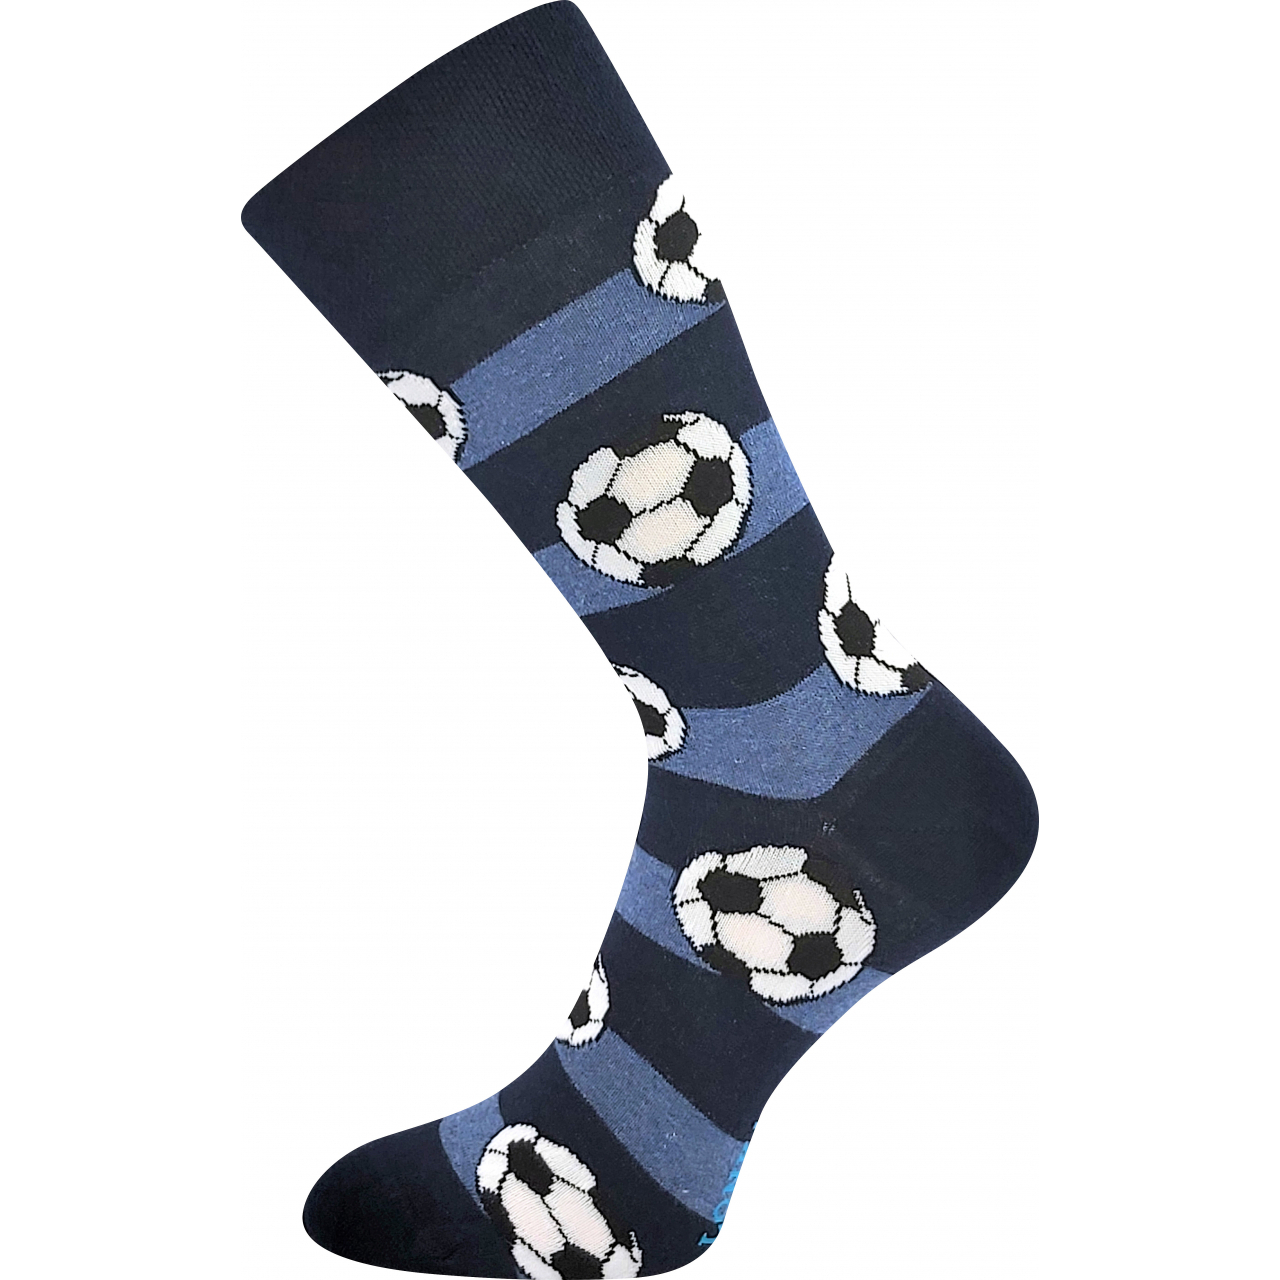 Ponožky trendy pánské Lonka Depate Fotbal - černé-modré, 43-46